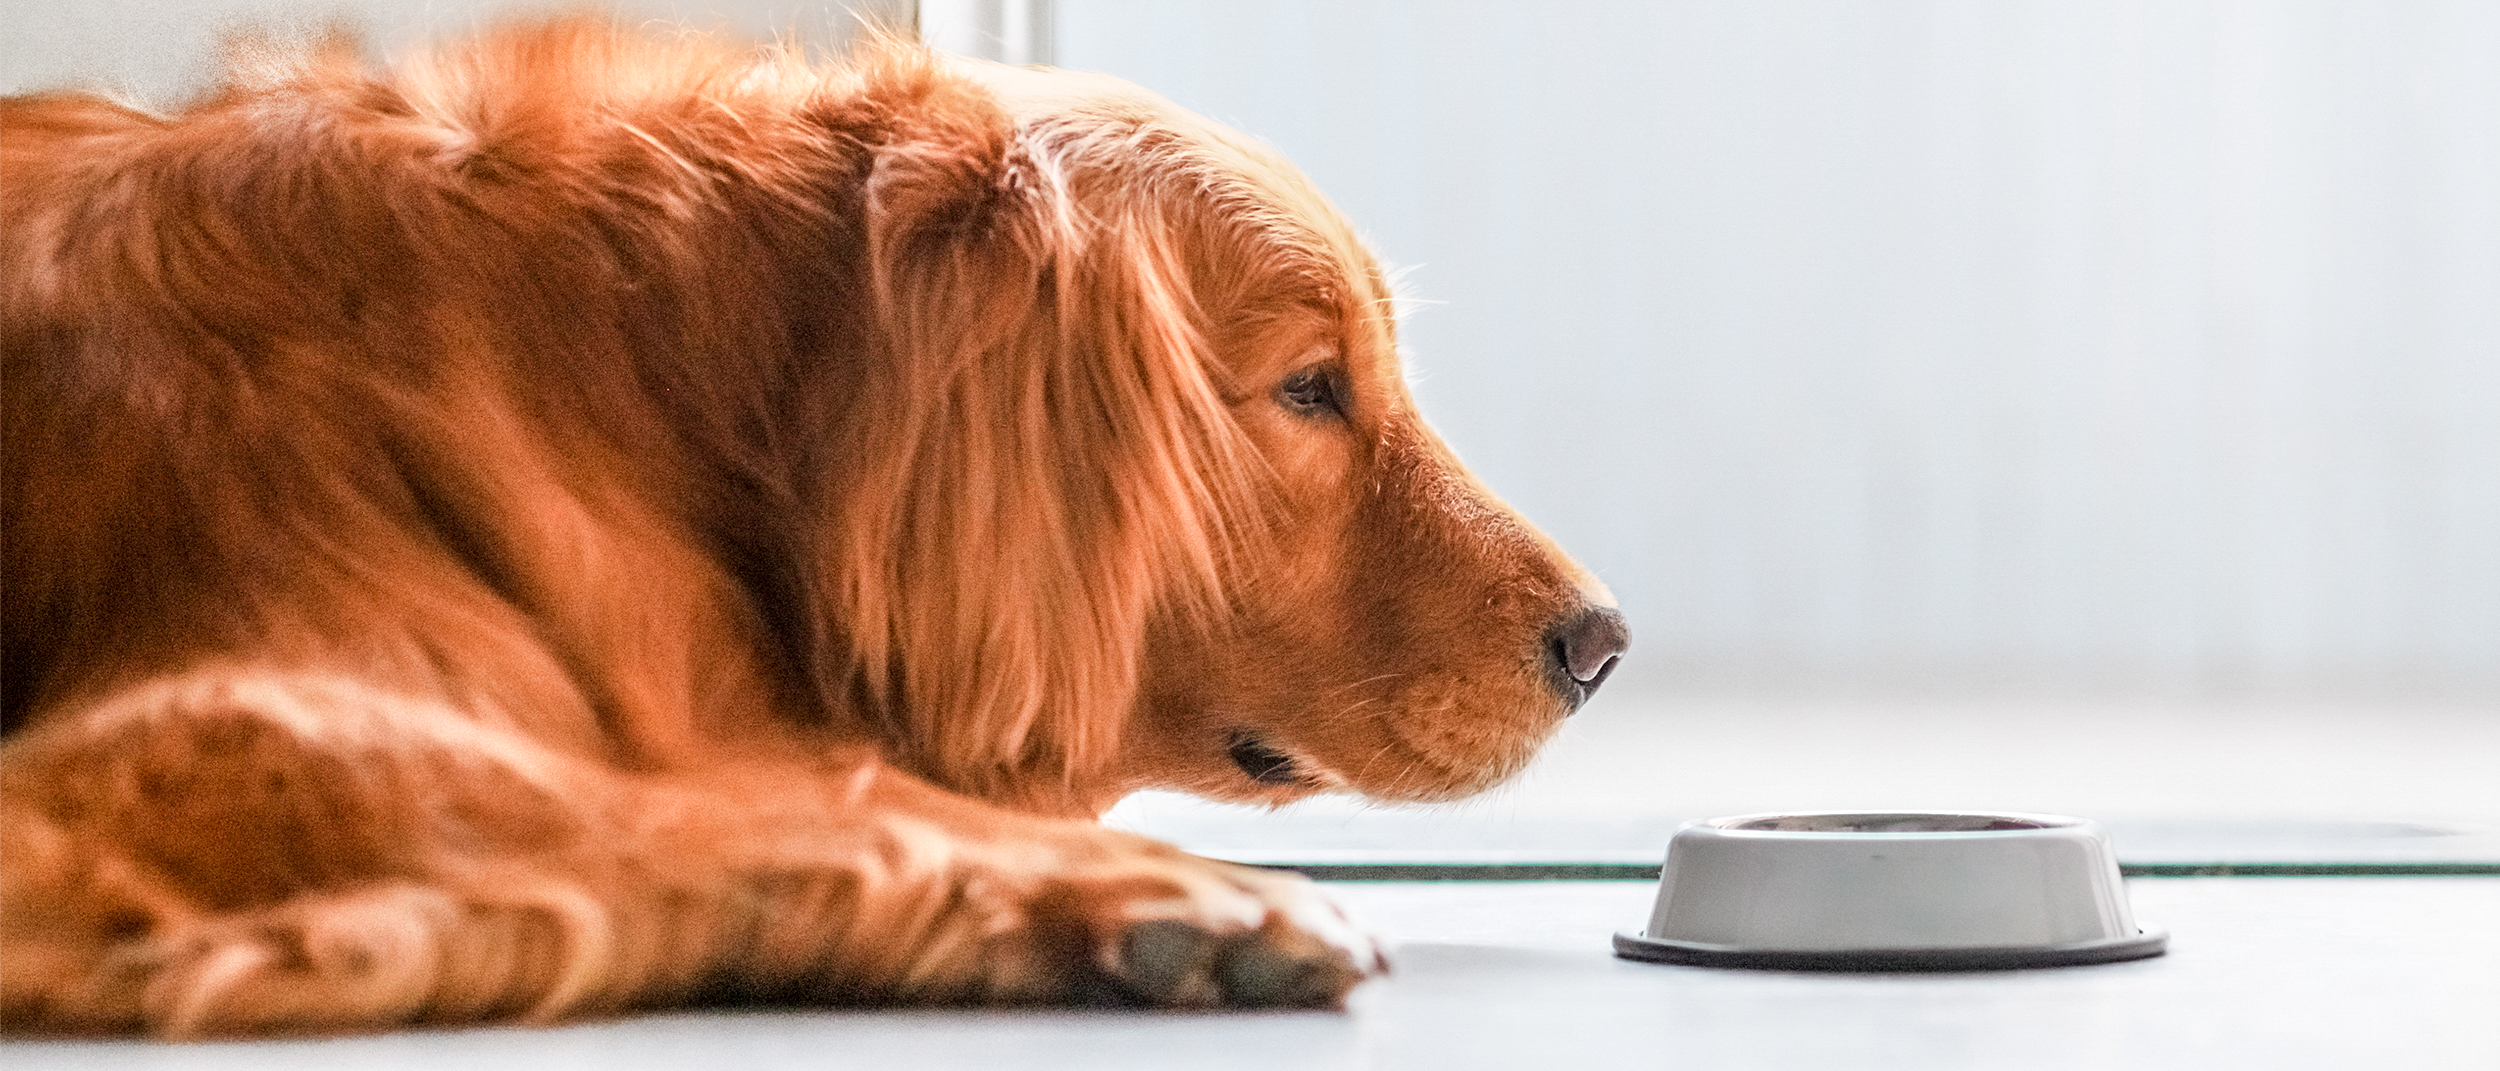 Anjing Golden Retriever dewasa berbaring di lantai di sebelah mangkuk perak.